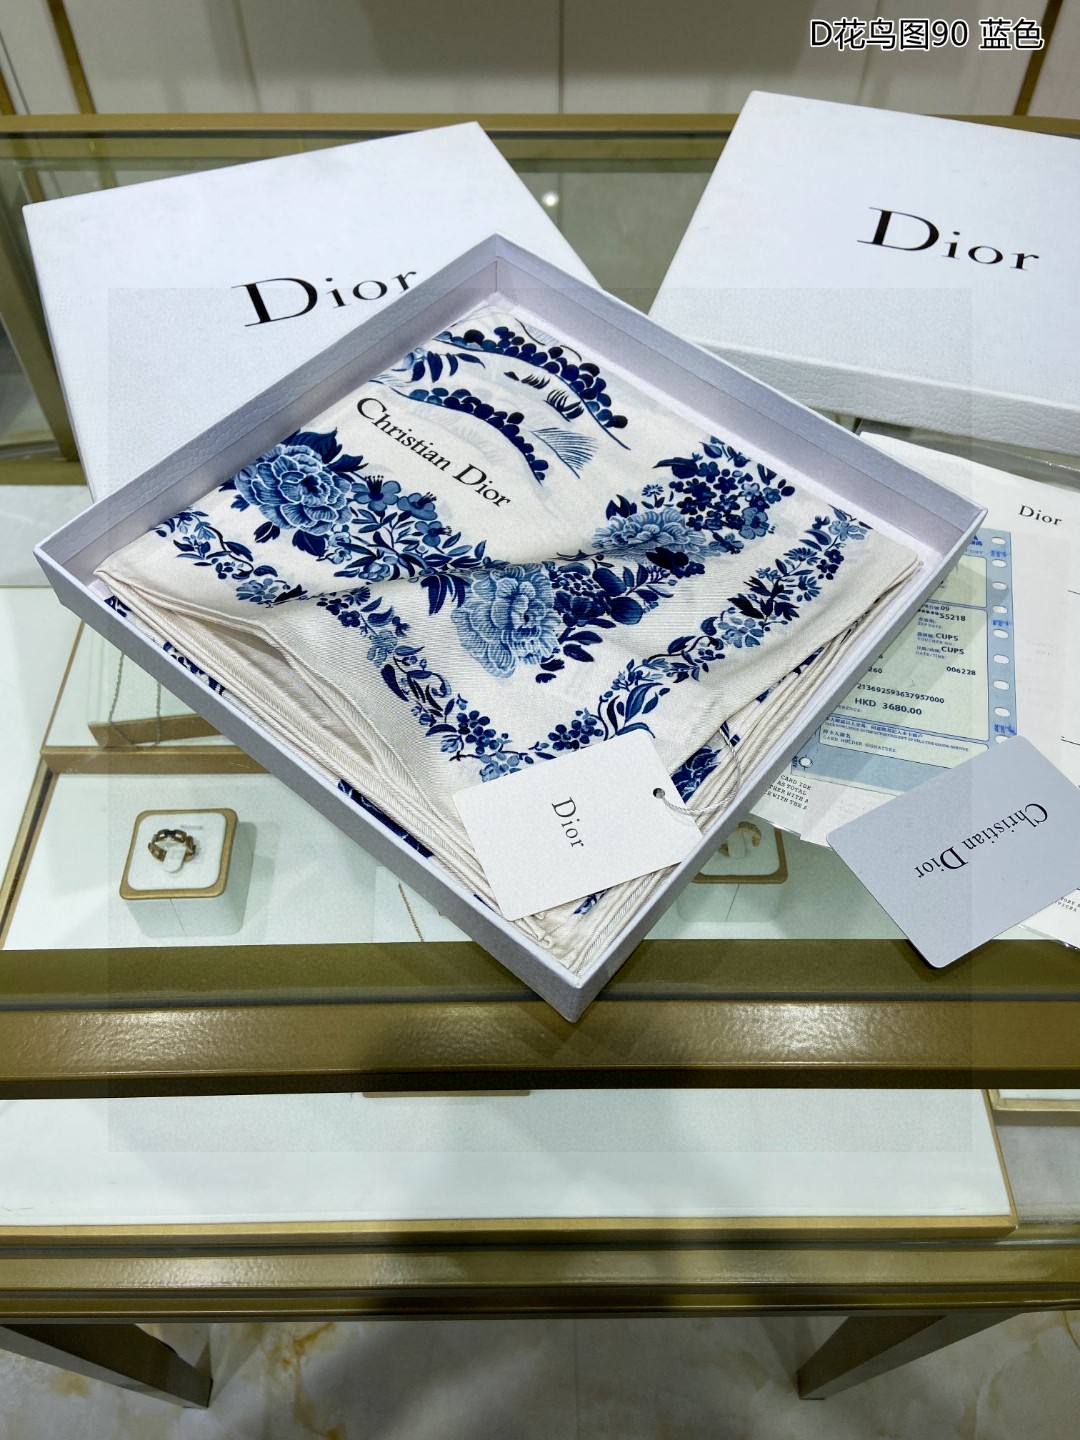 爆款高端定制Dior最最新的专柜主打款D花鸟图90双面同色真丝方巾度假及日常都非常好搭配的款订单私流一看